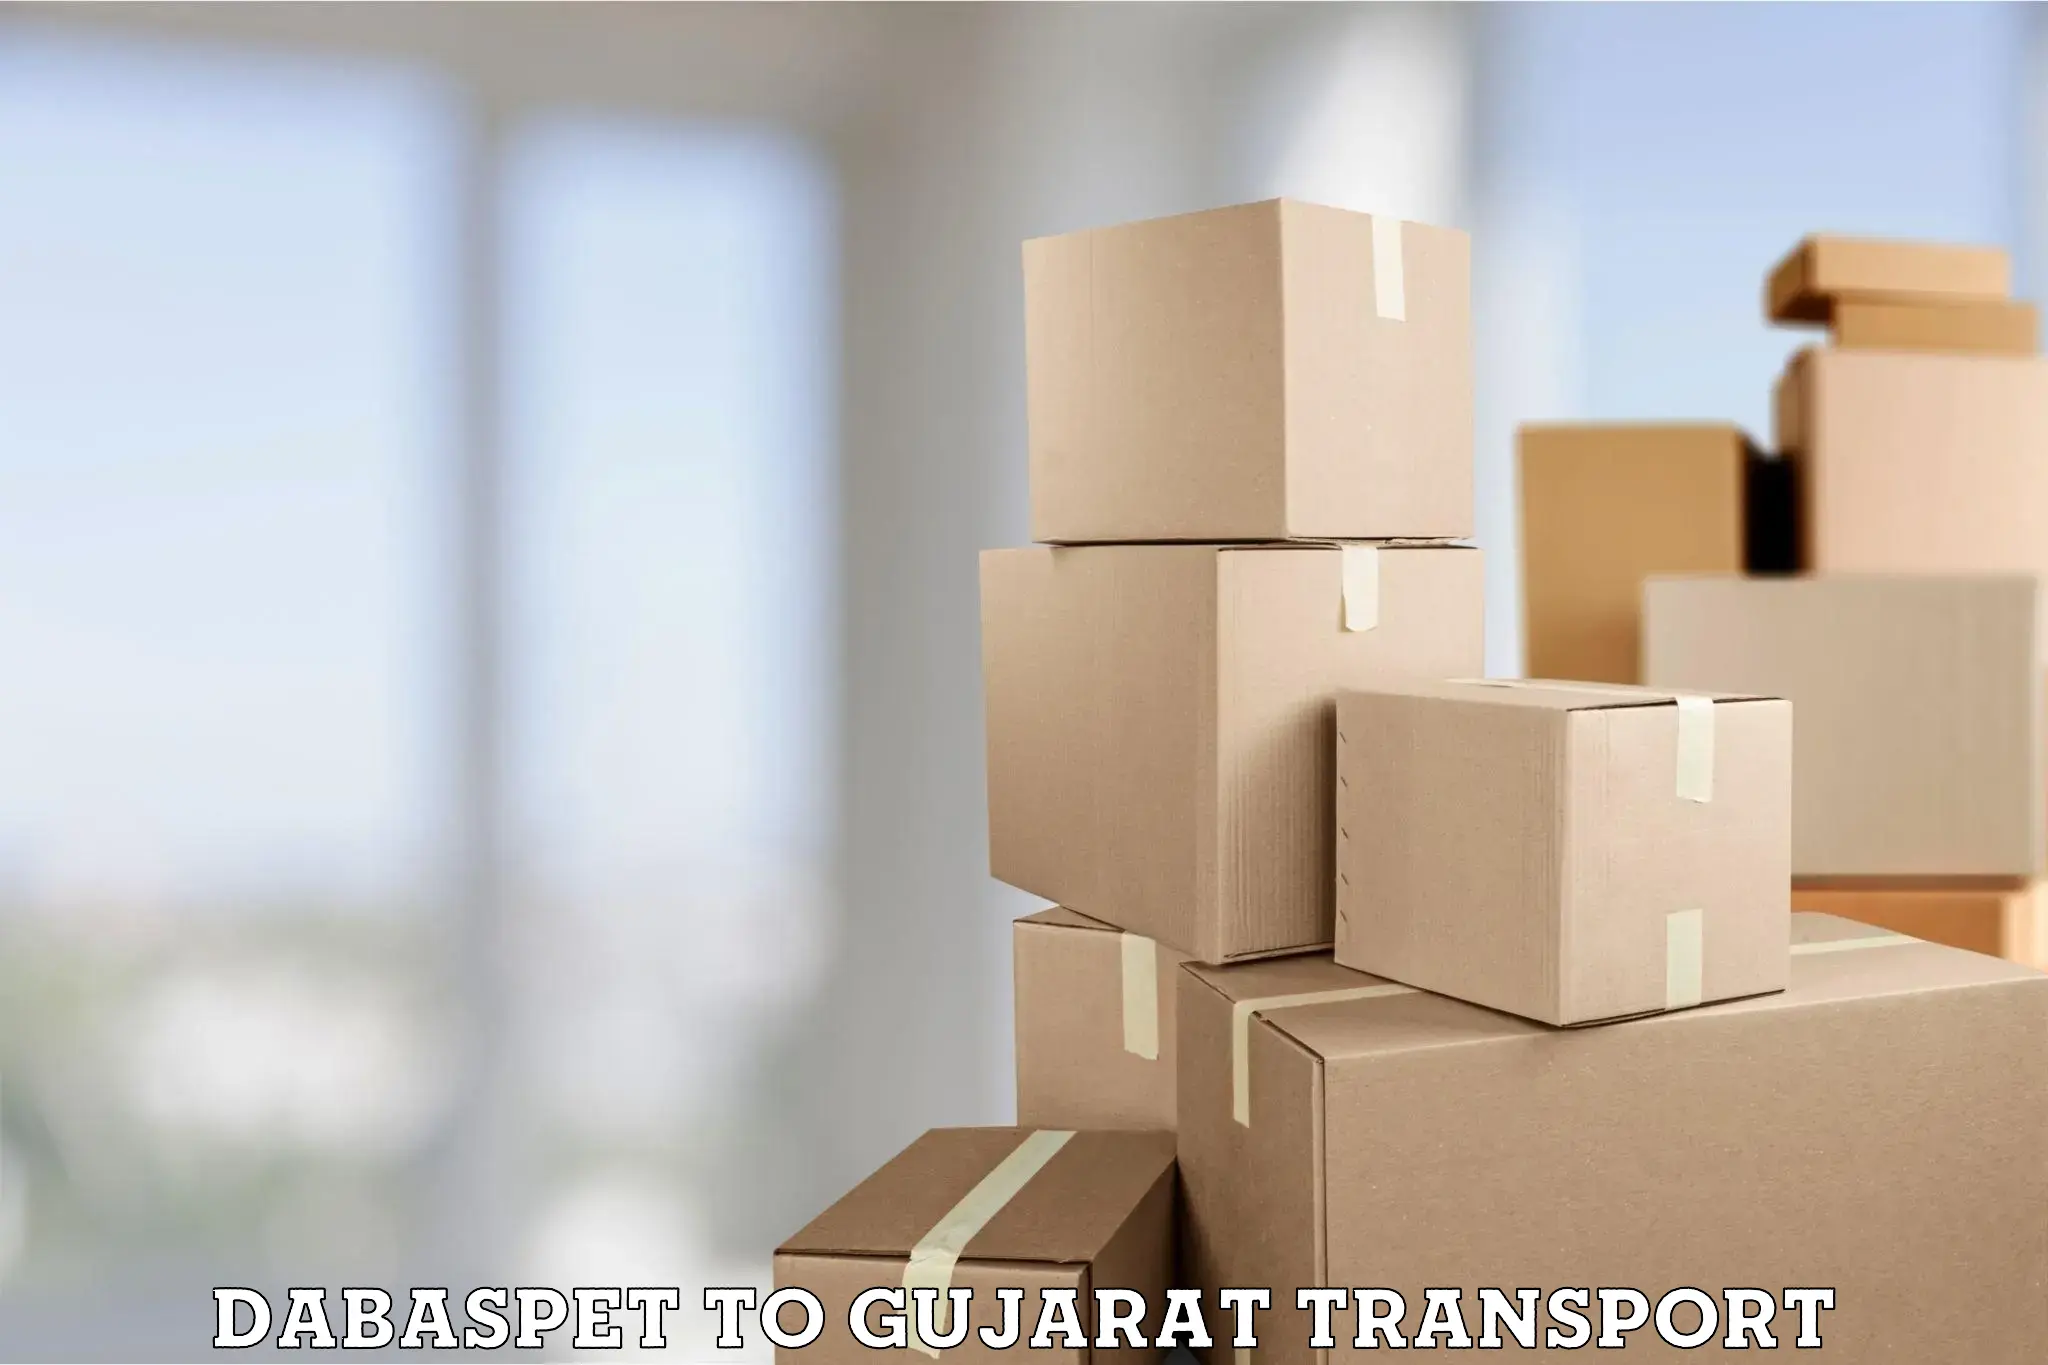 Two wheeler parcel service Dabaspet to Harij